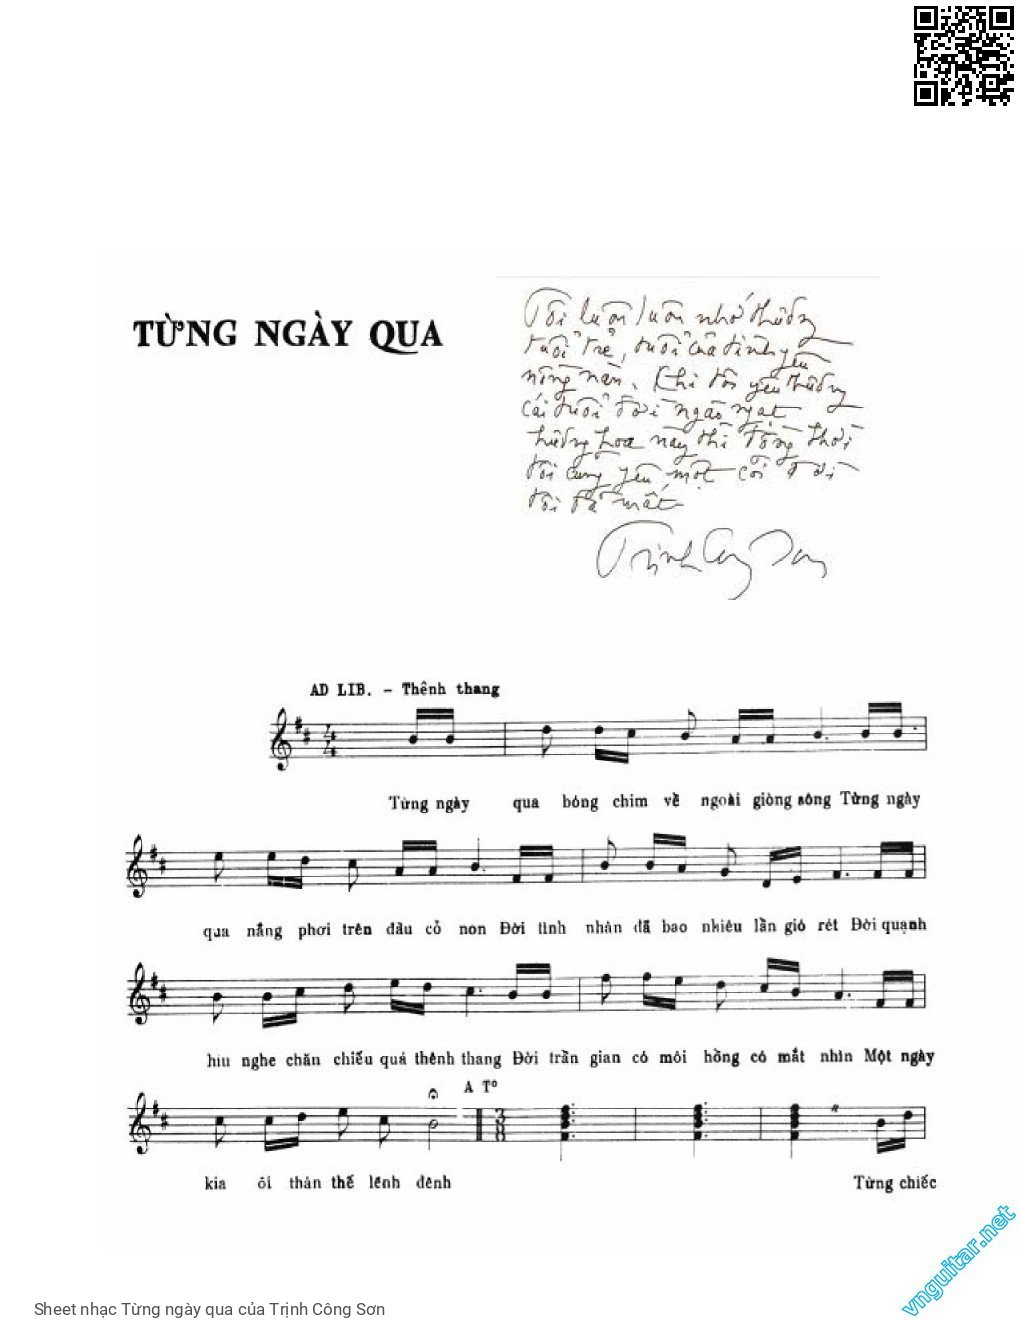 Sheet nhạc Từng ngày qua - Trịnh Công Sơn